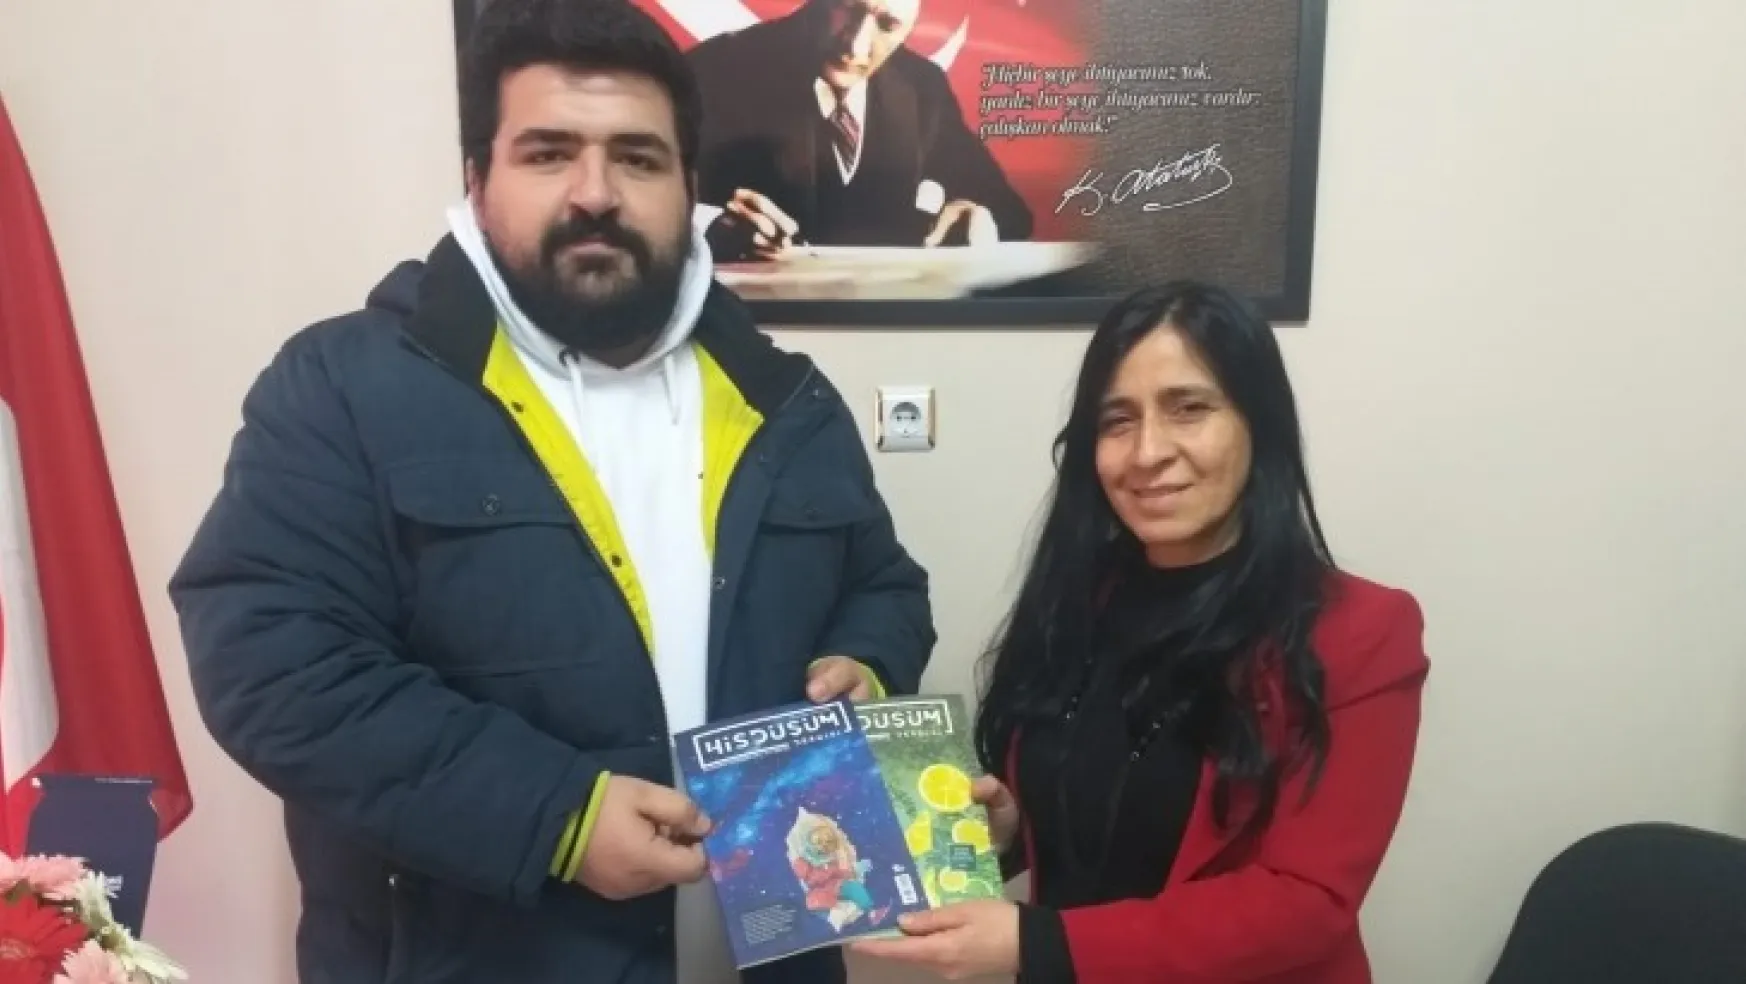 His Düşüm Dergisi İmtiyaz Sahibi Sofuoğlu'ndan Abyb'ye Ziyaret